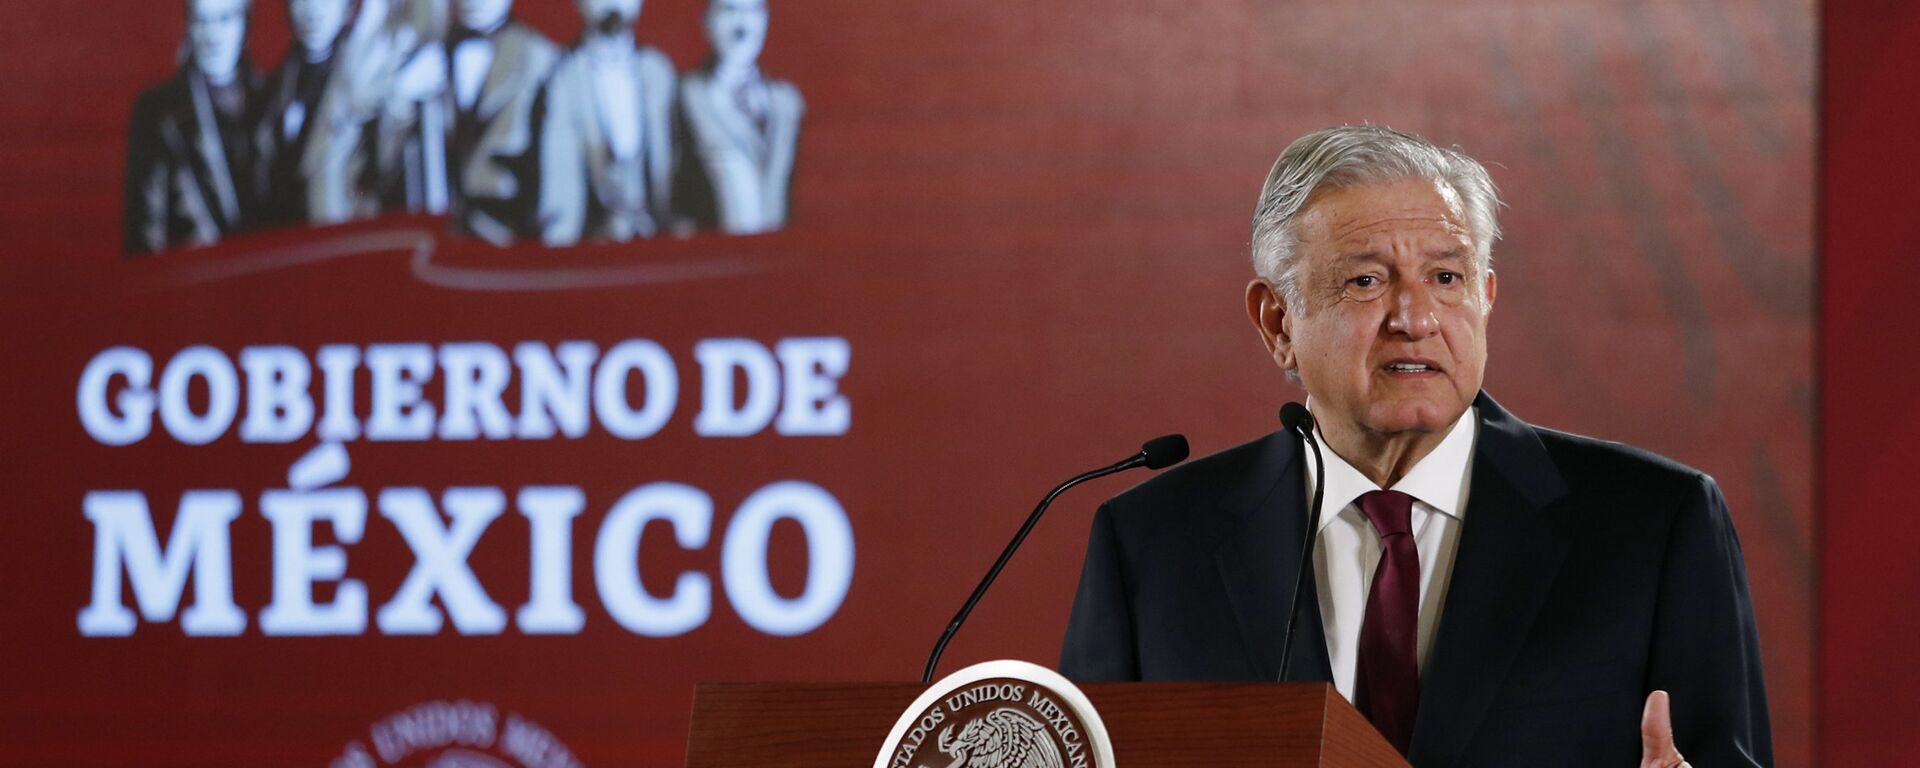 Andrés Manuel López Obrador, presidente de México - Sputnik Mundo, 1920, 19.08.2021